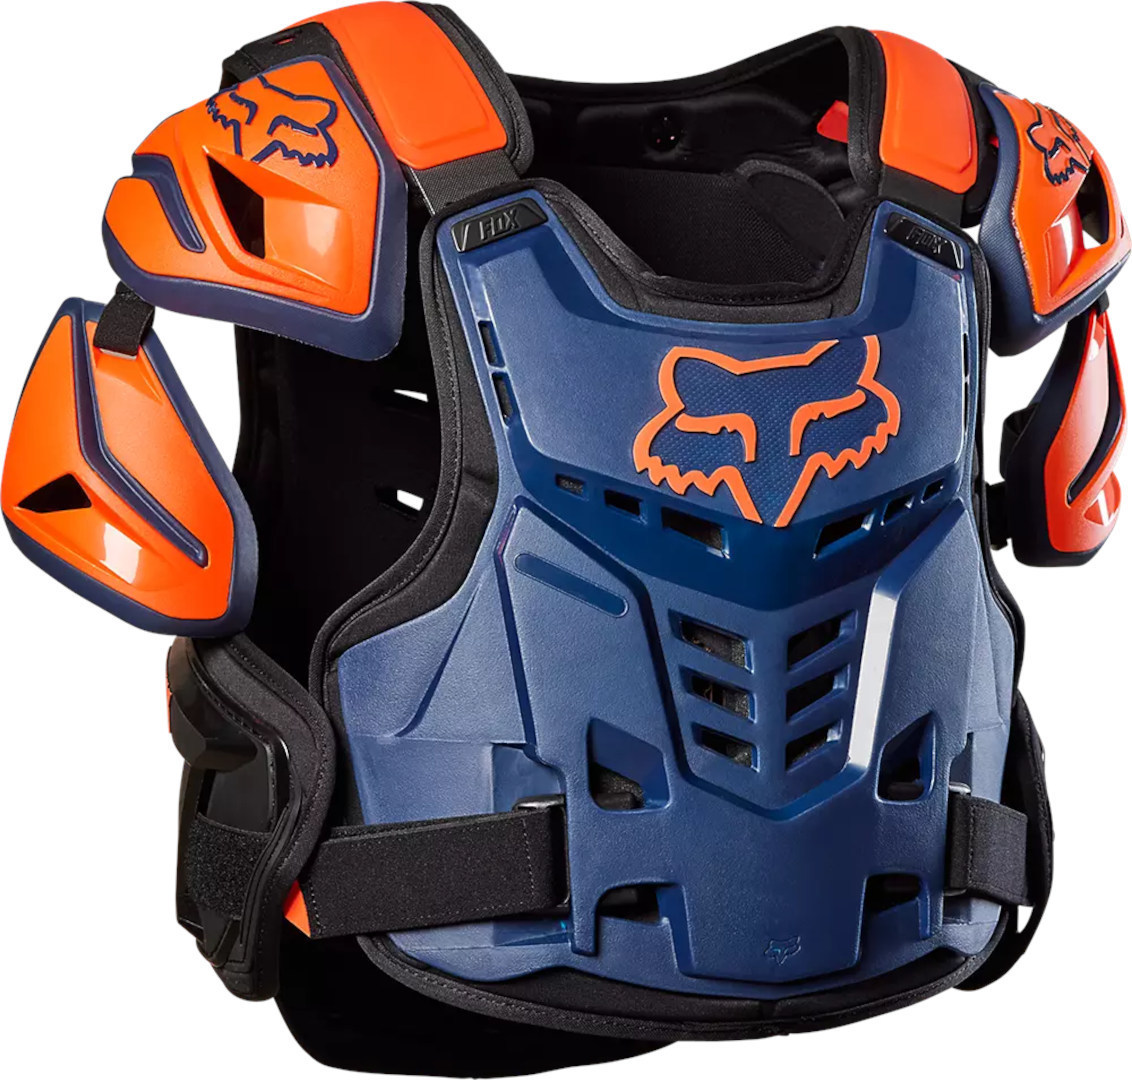 Панцирь FOX Raptor защитный, синий/оранжевый жилет защитный спрут канада 129443 44 46 синий оранжевый